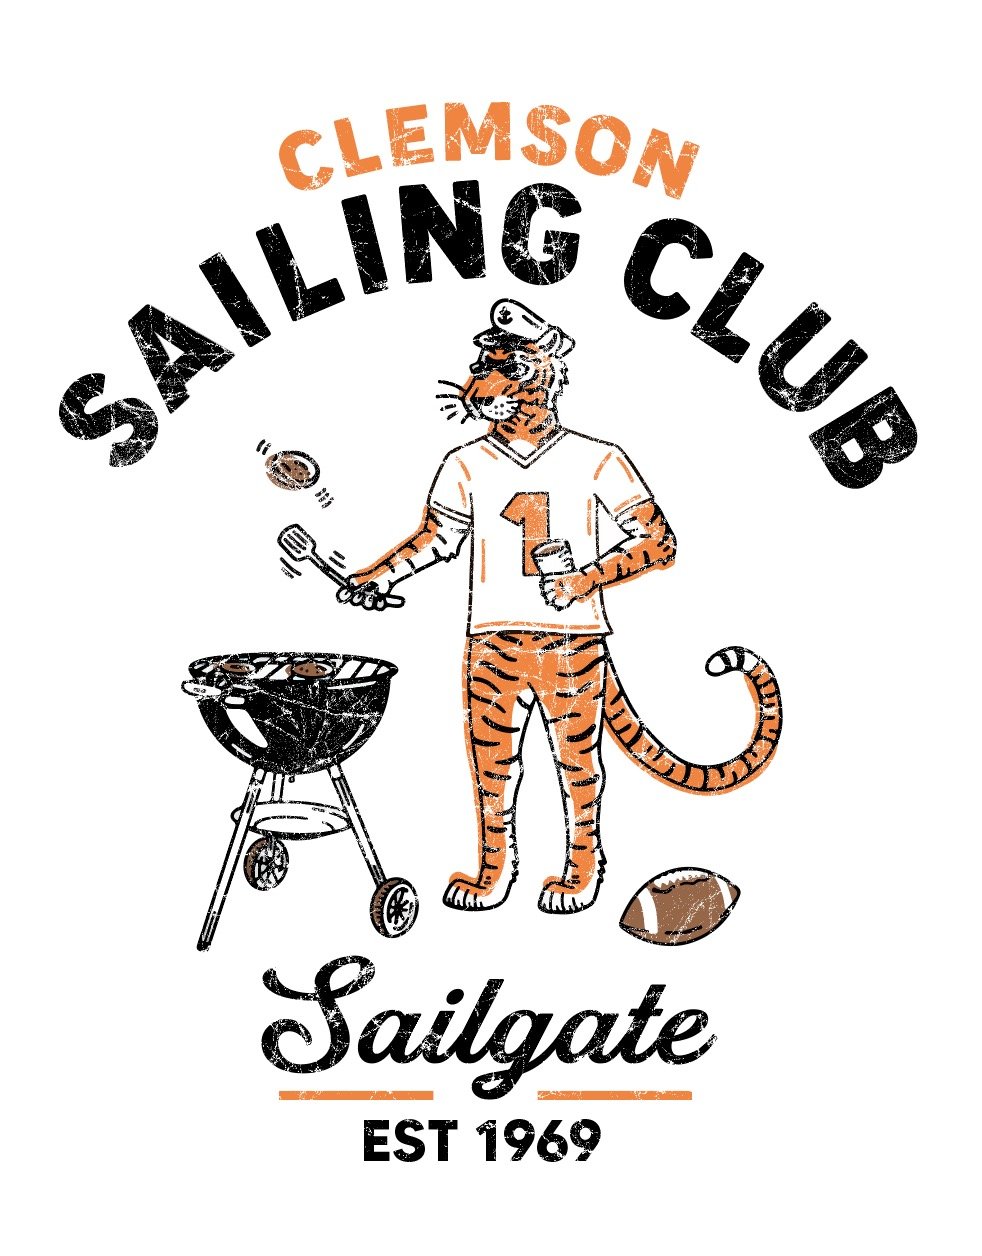 Clemson Sailing Club Kanga Cooler — Clemson University Sailing Club